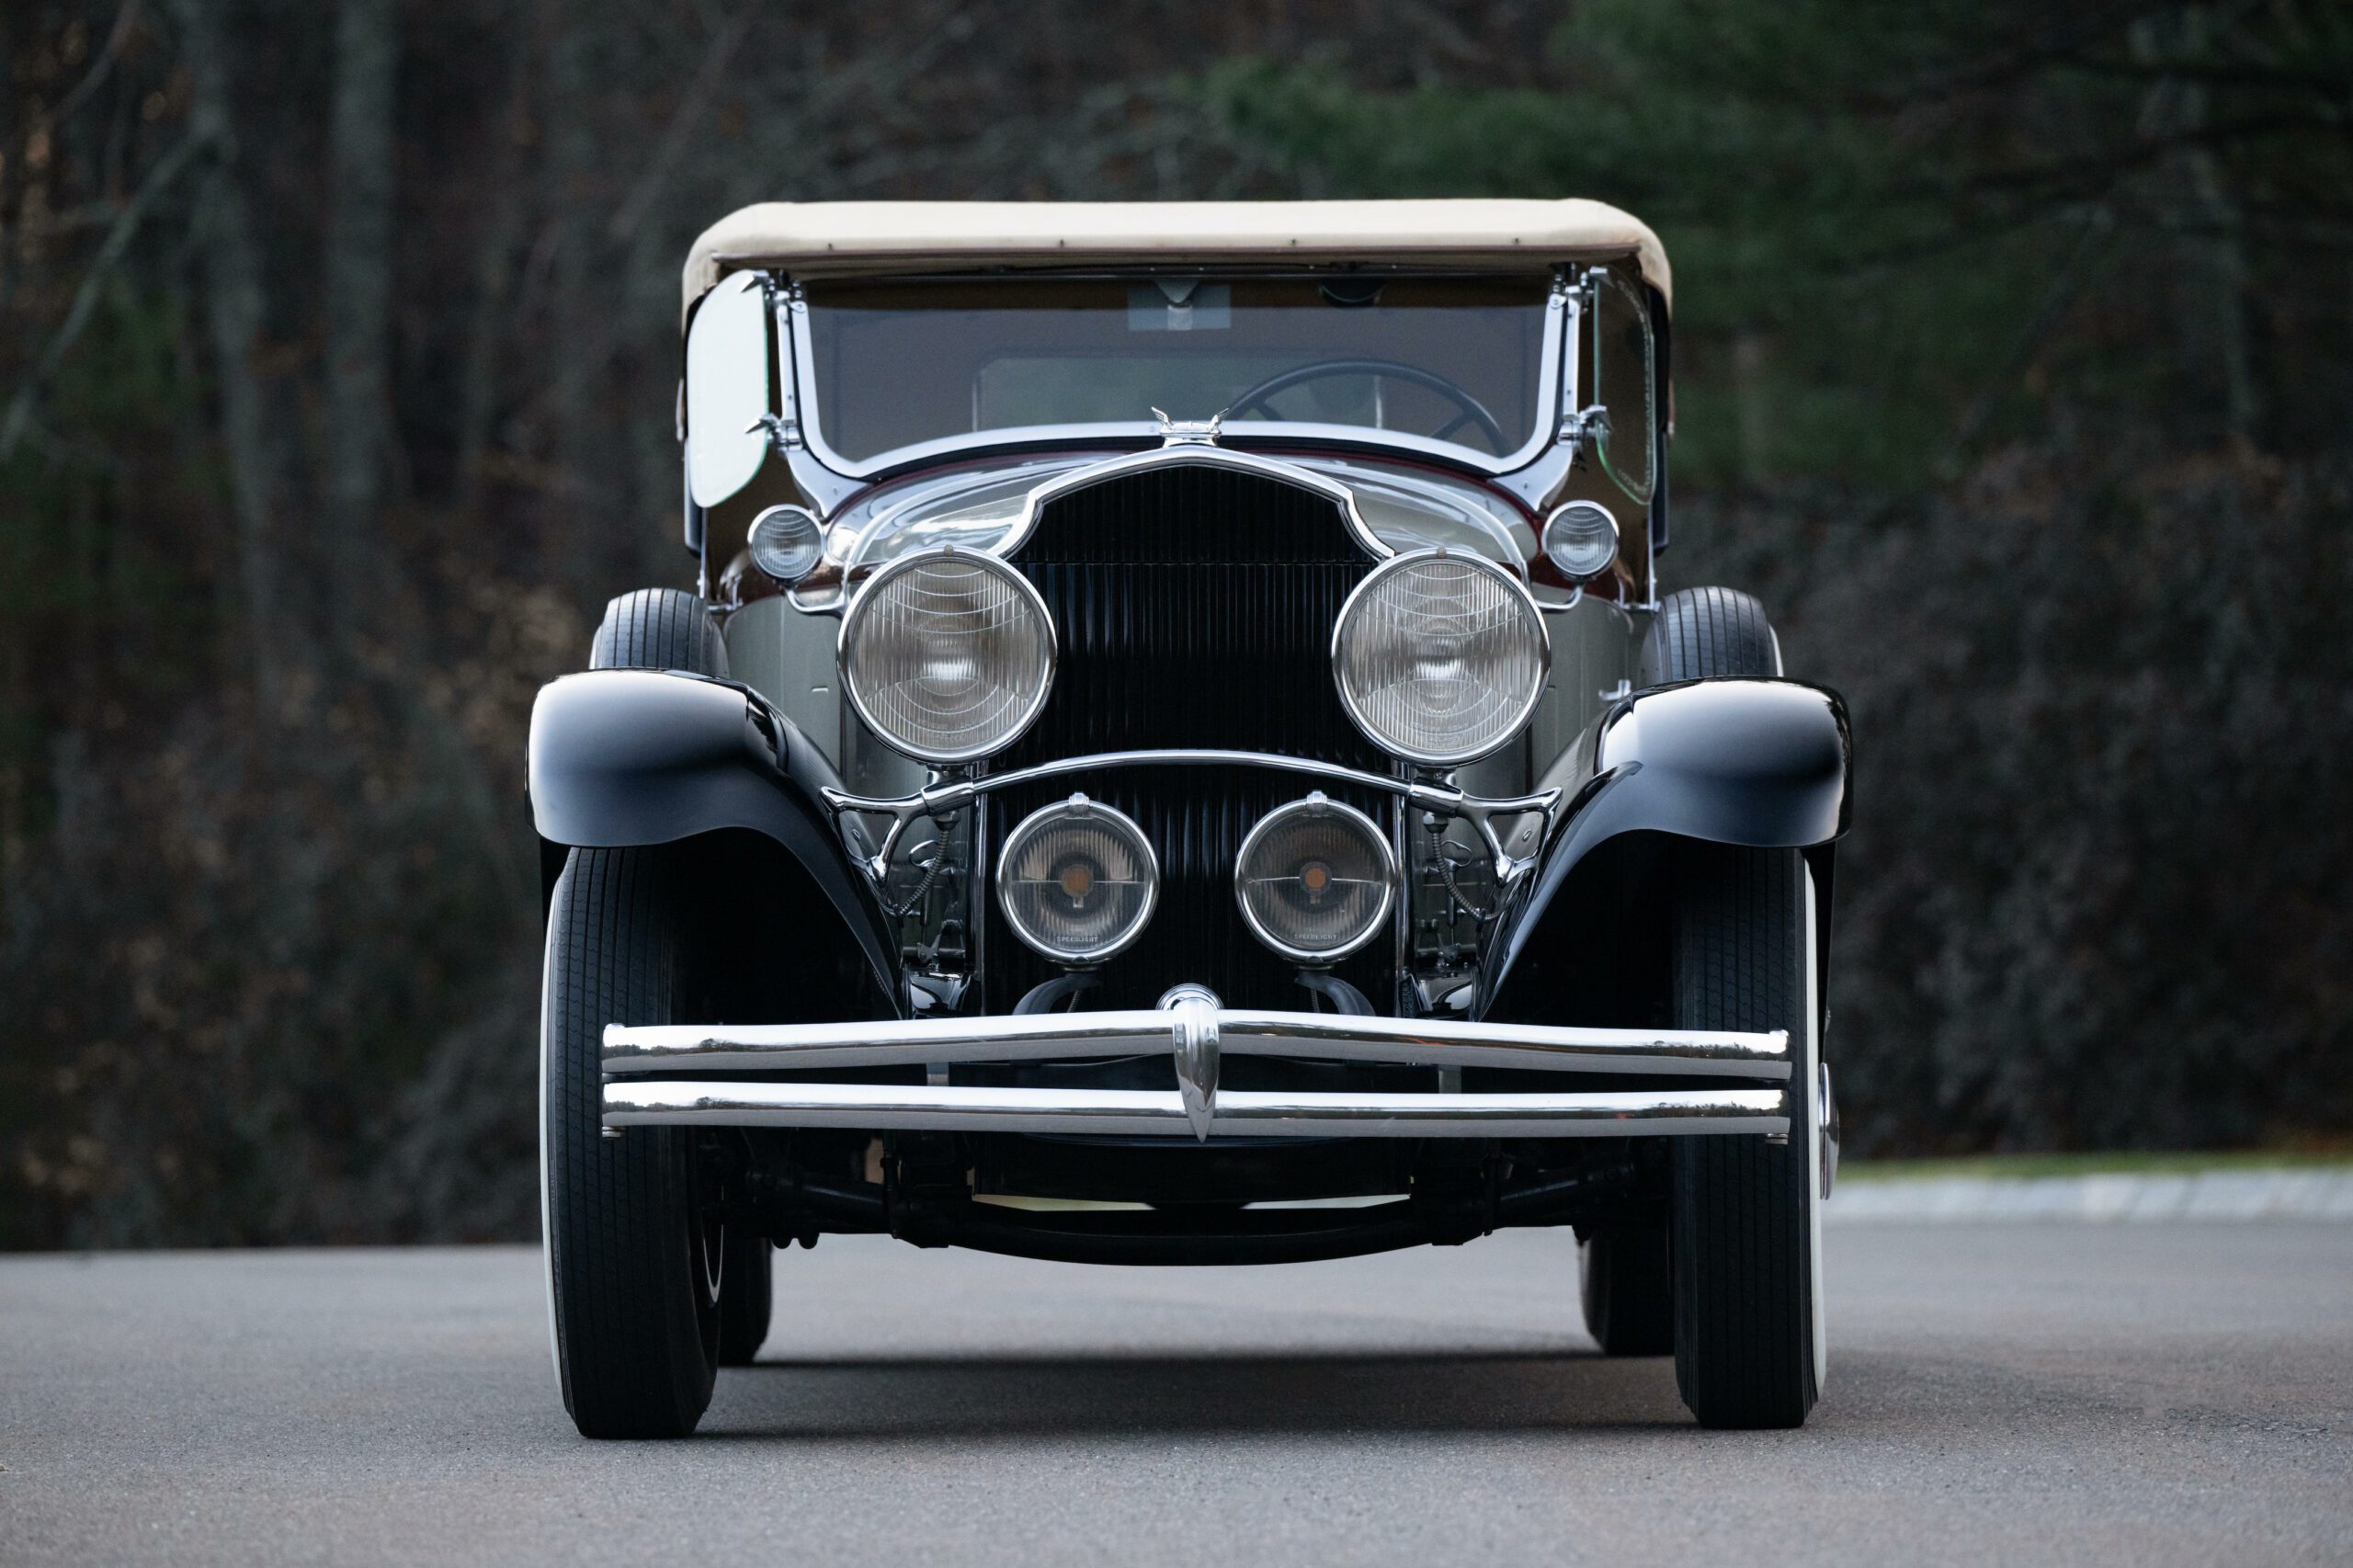 1930 Chrysler Imperial Series 80L Roadster, Chrysler, Chrysler Imperial